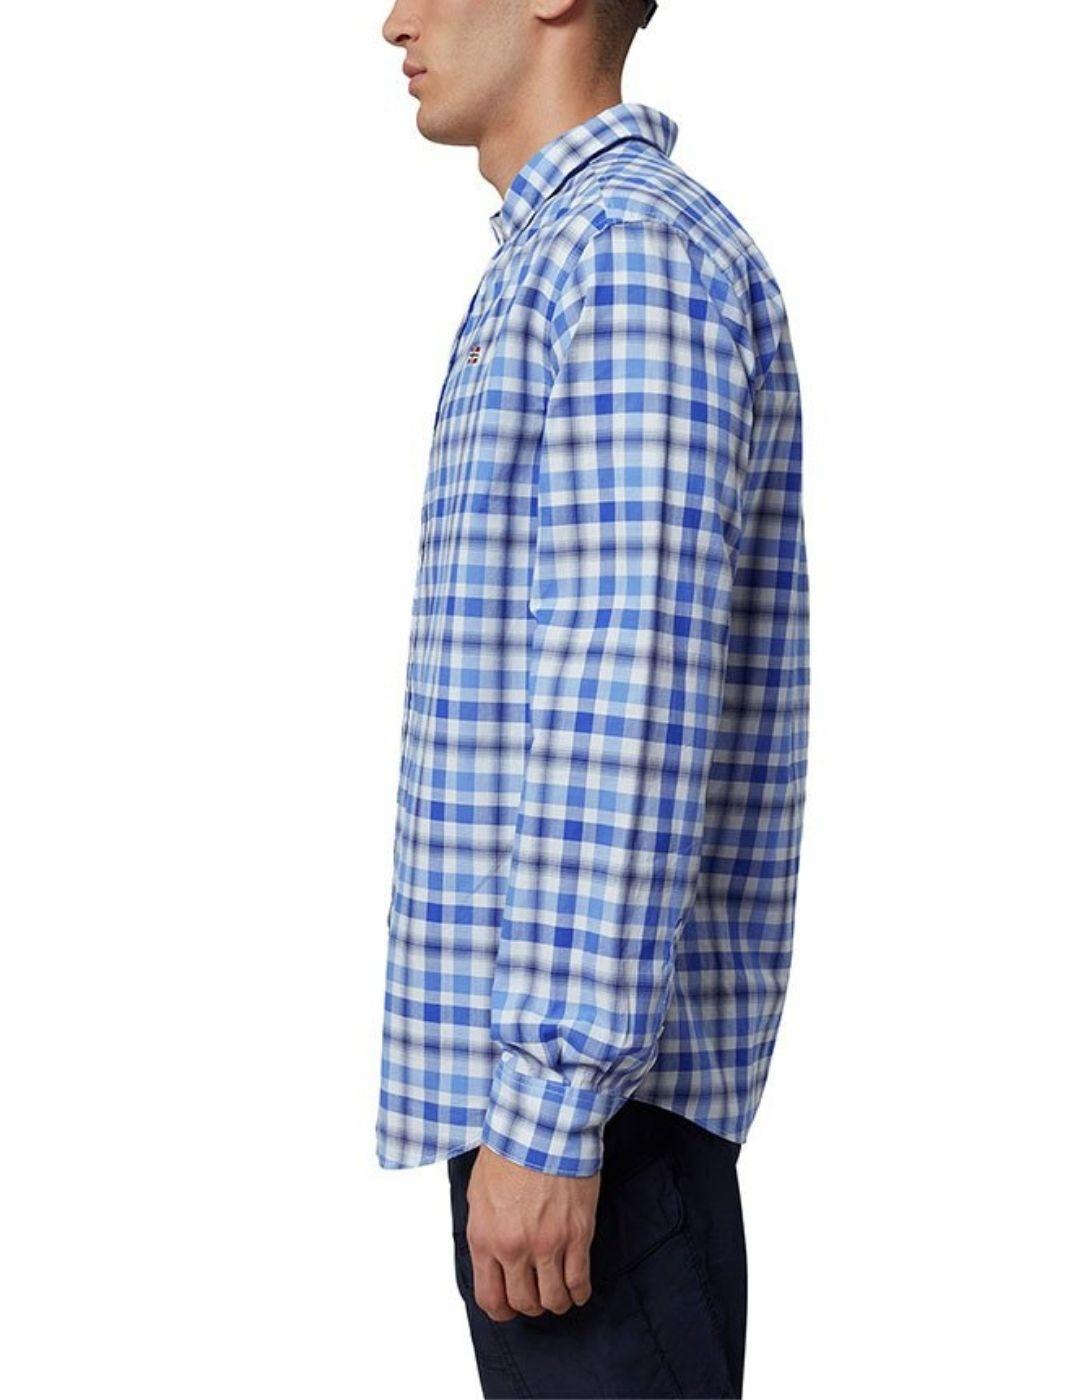 Camisa Napapijri de manga larga Grinnel para hombre